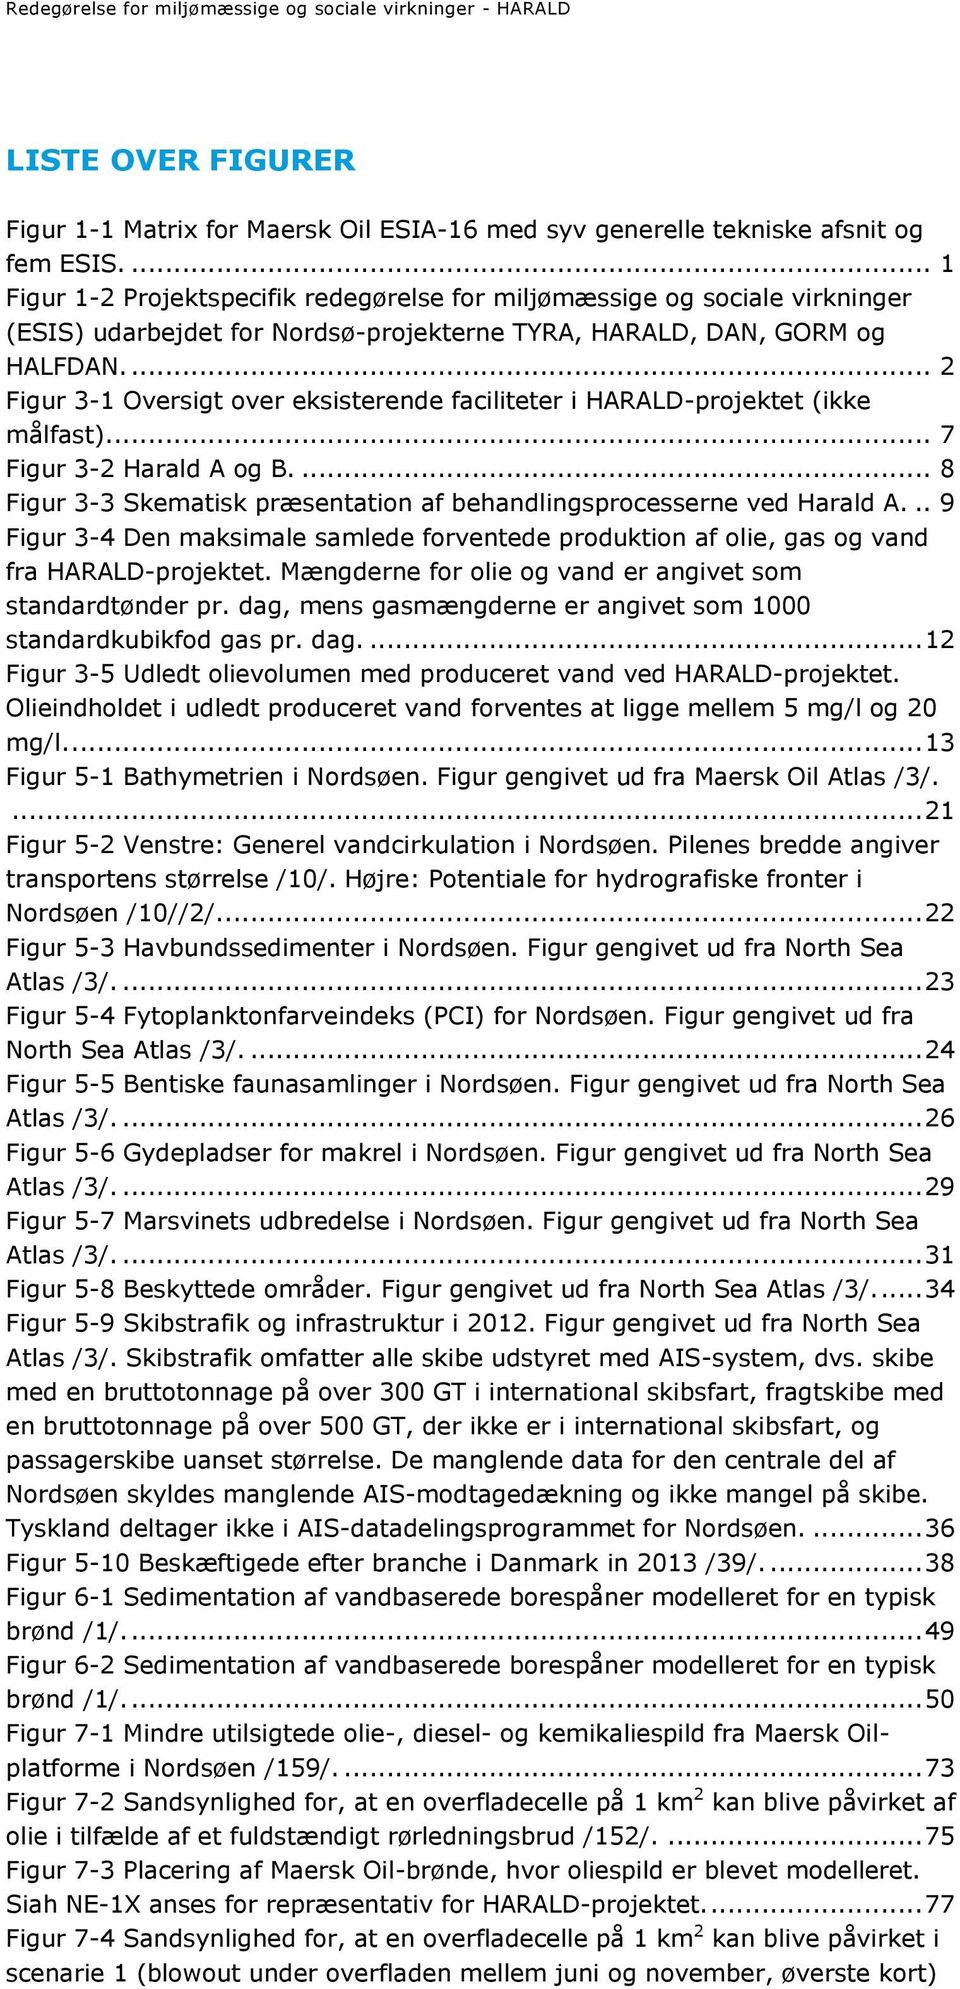 ... 2 Figur 3-1 Oversigt over eksisterende faciliteter i HARALD-projektet (ikke målfast).... 7 Figur 3-2 Harald A og B.... 8 Figur 3-3 Skematisk præsentation af behandlingsprocesserne ved Harald A.